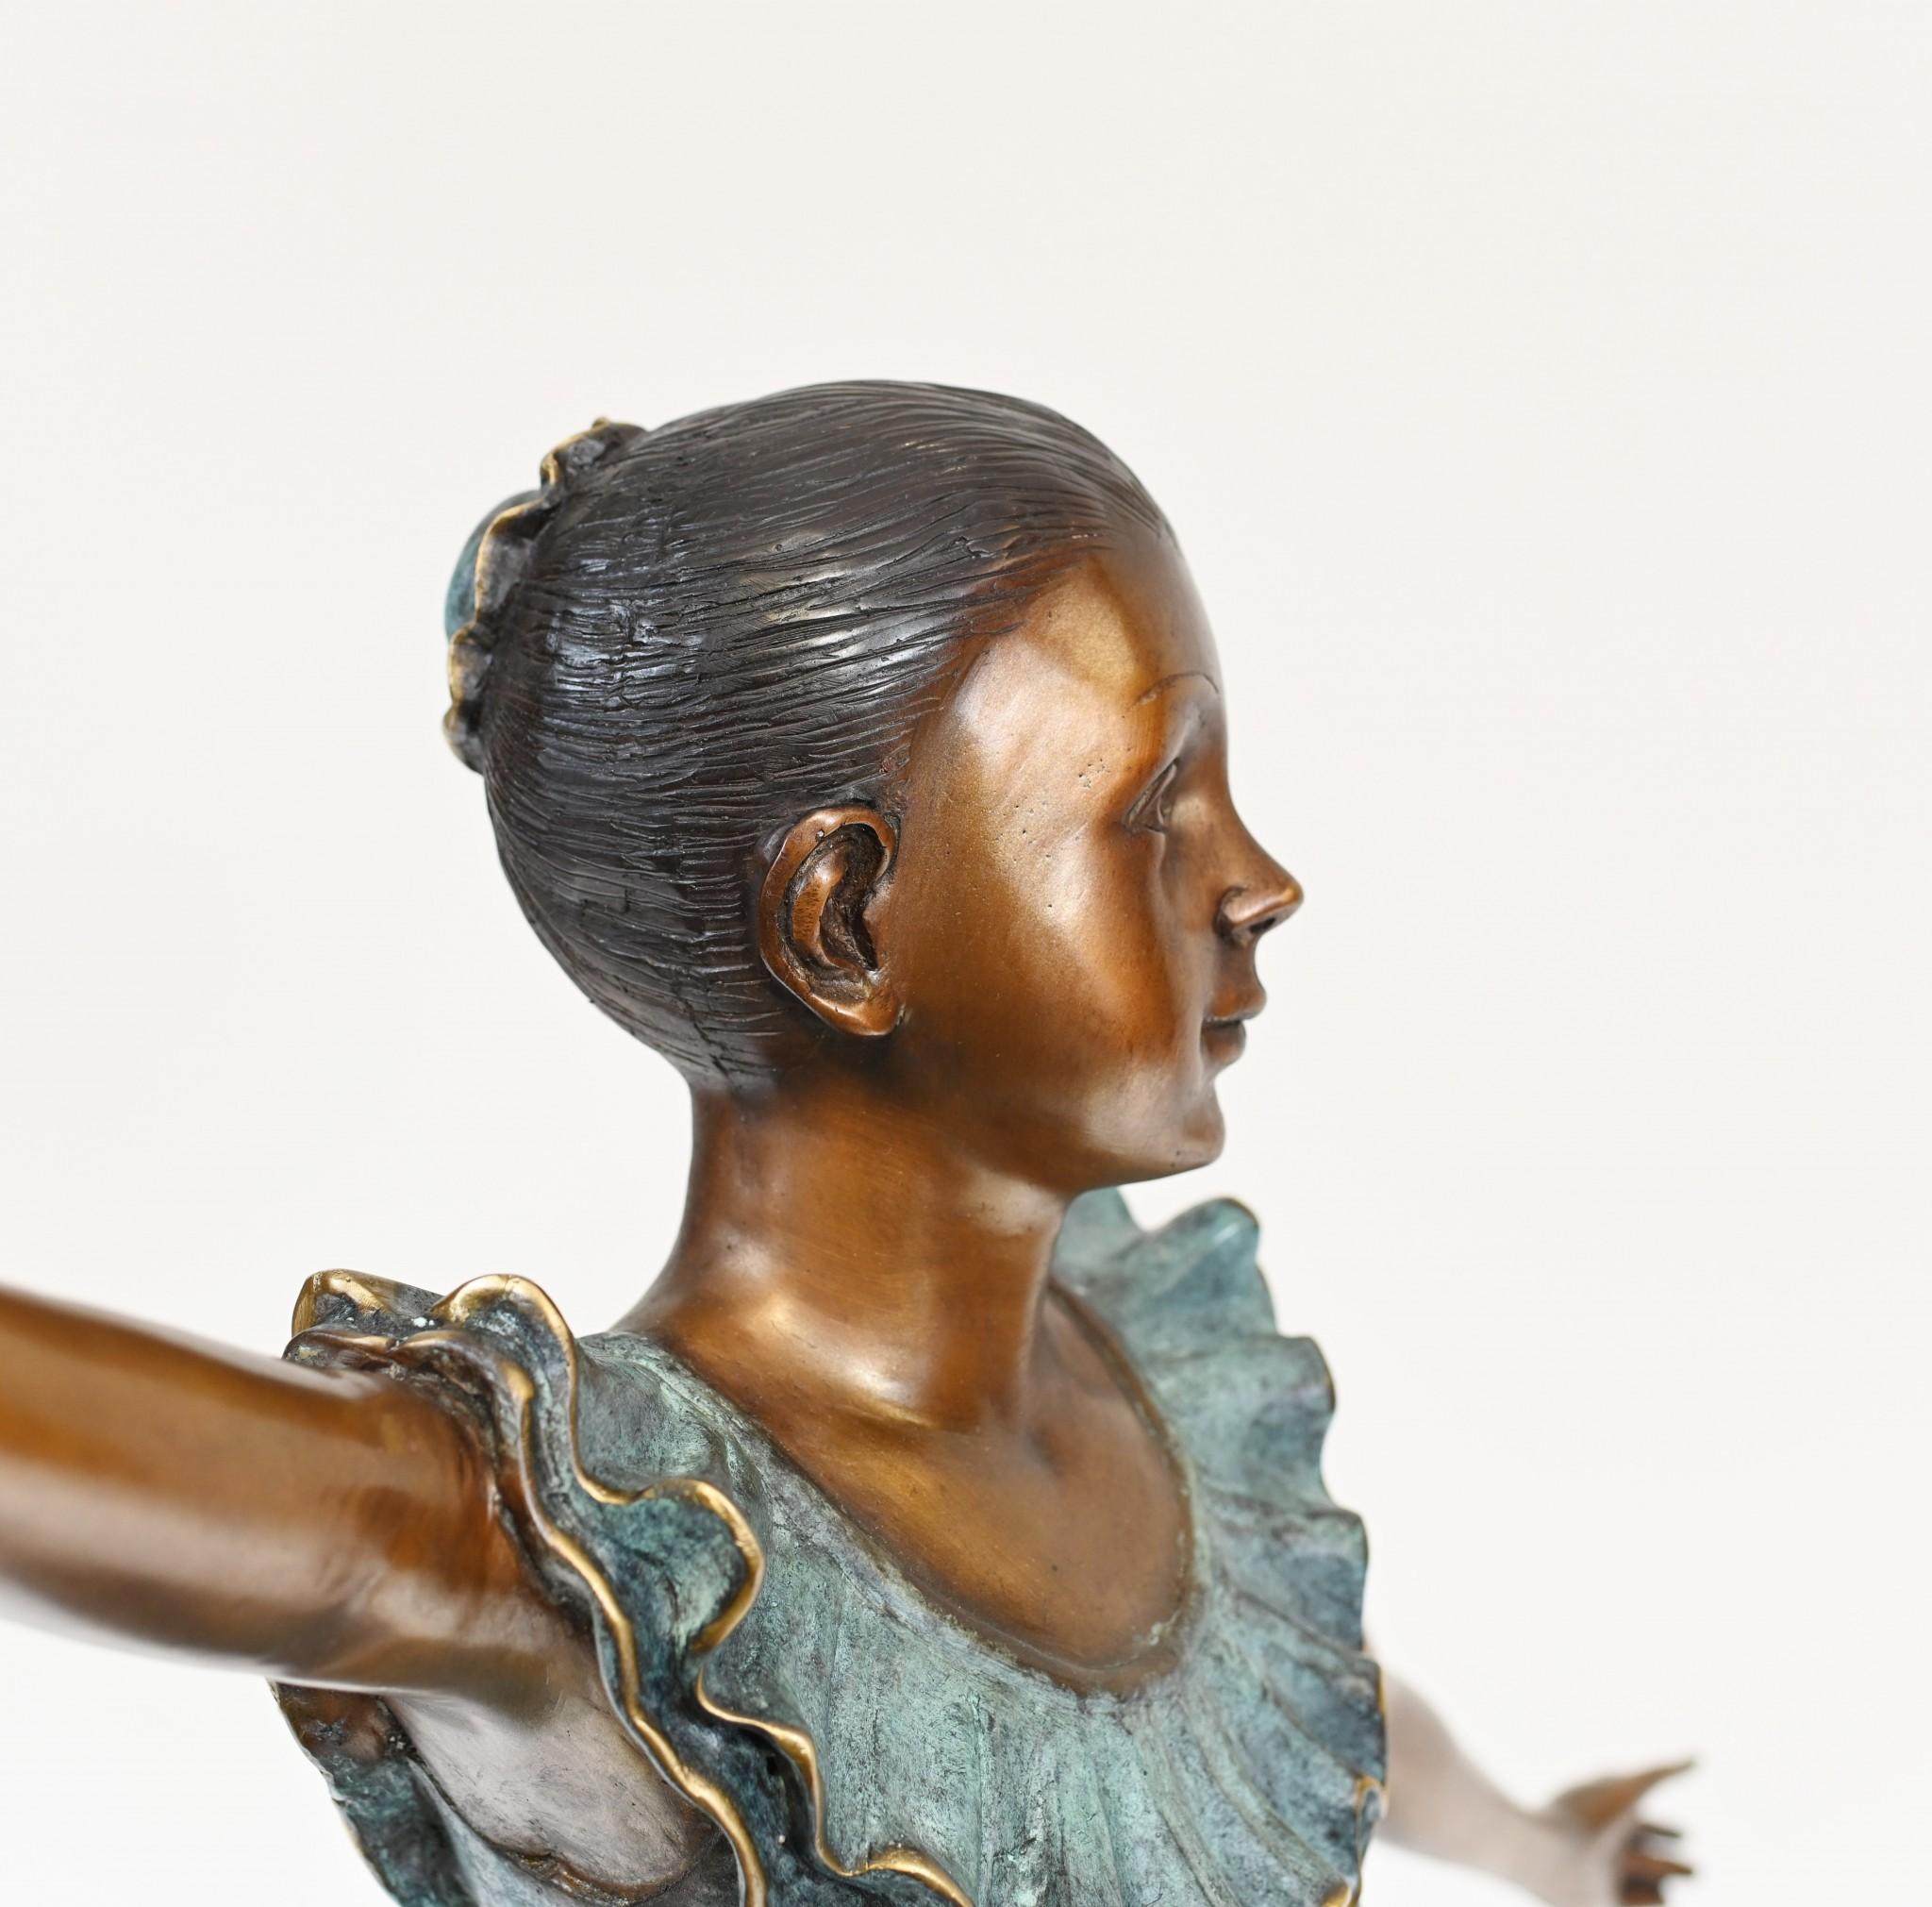 Eleganter französischer Bronzeguss einer jungen Ballerina
Schöne grüne Patina auf der Degas-Manier Stück
Gekauft bei einem Händler am Marche Biron auf dem Pariser Antiquitätenmarkt
Einige unserer Artikel sind in der Lagerung, so überprüfen Sie bitte